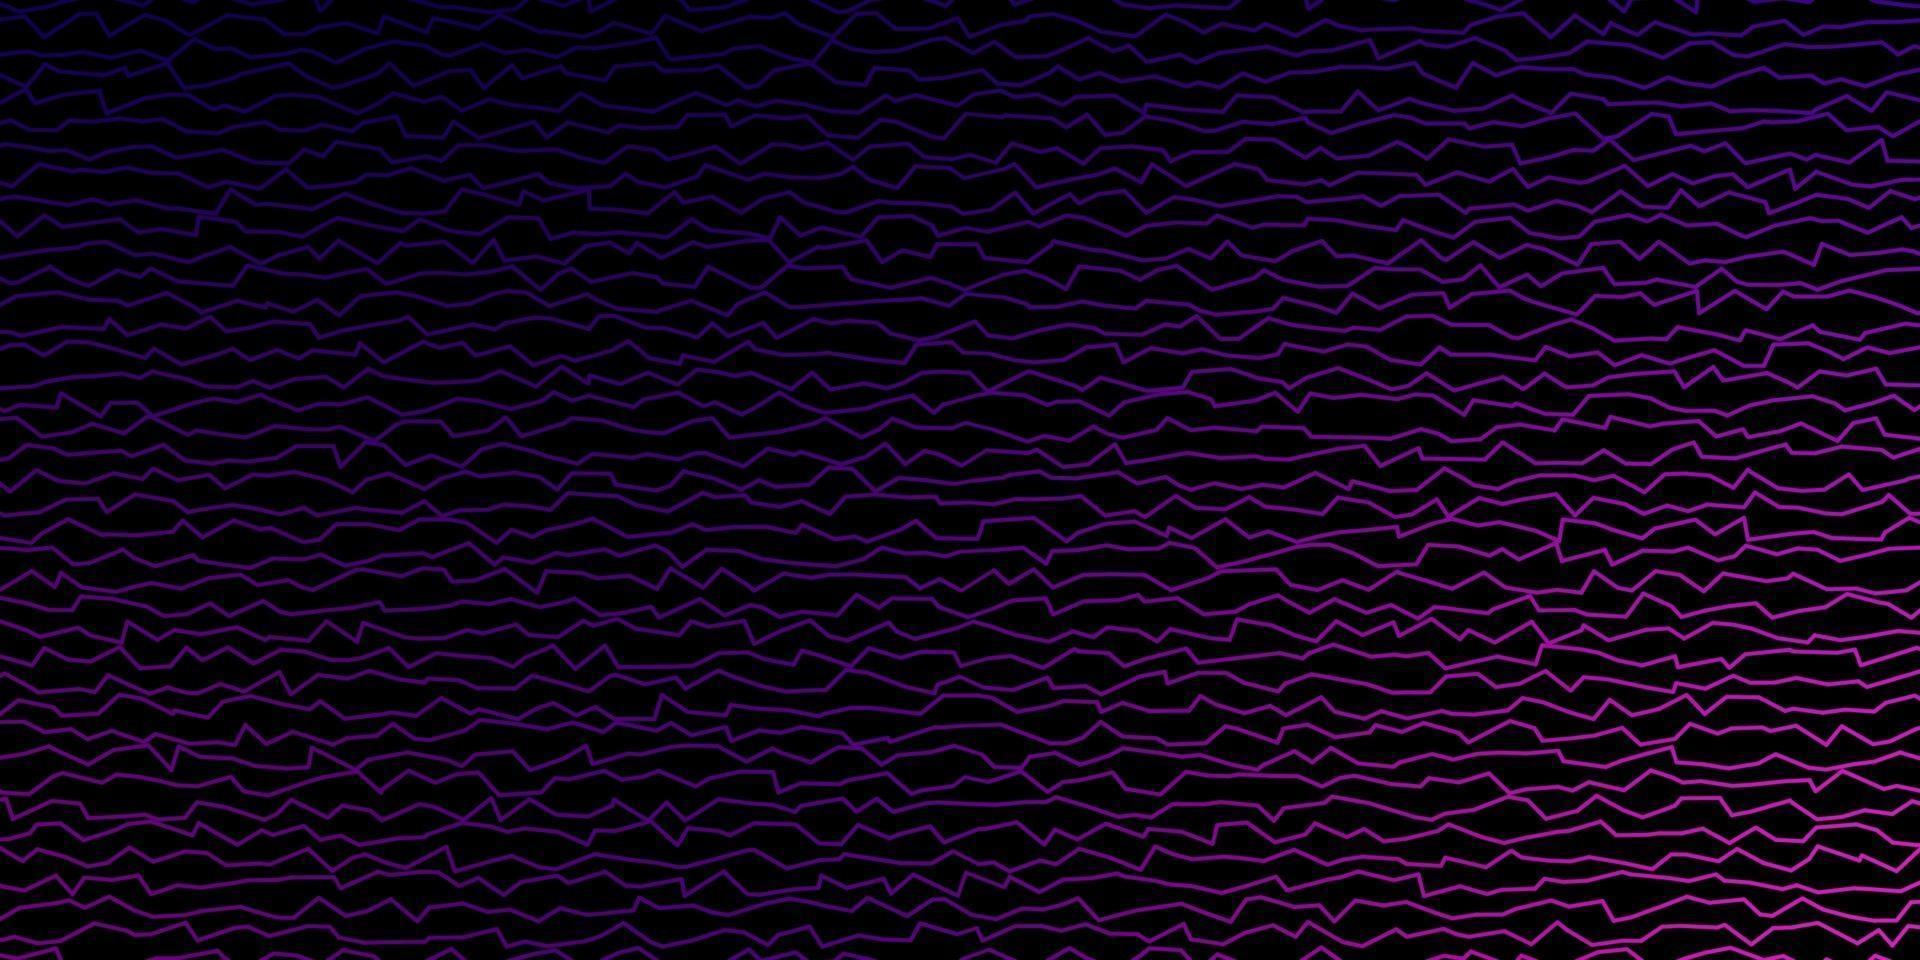 dunkelvioletter Vektorhintergrund mit Linien. vektor